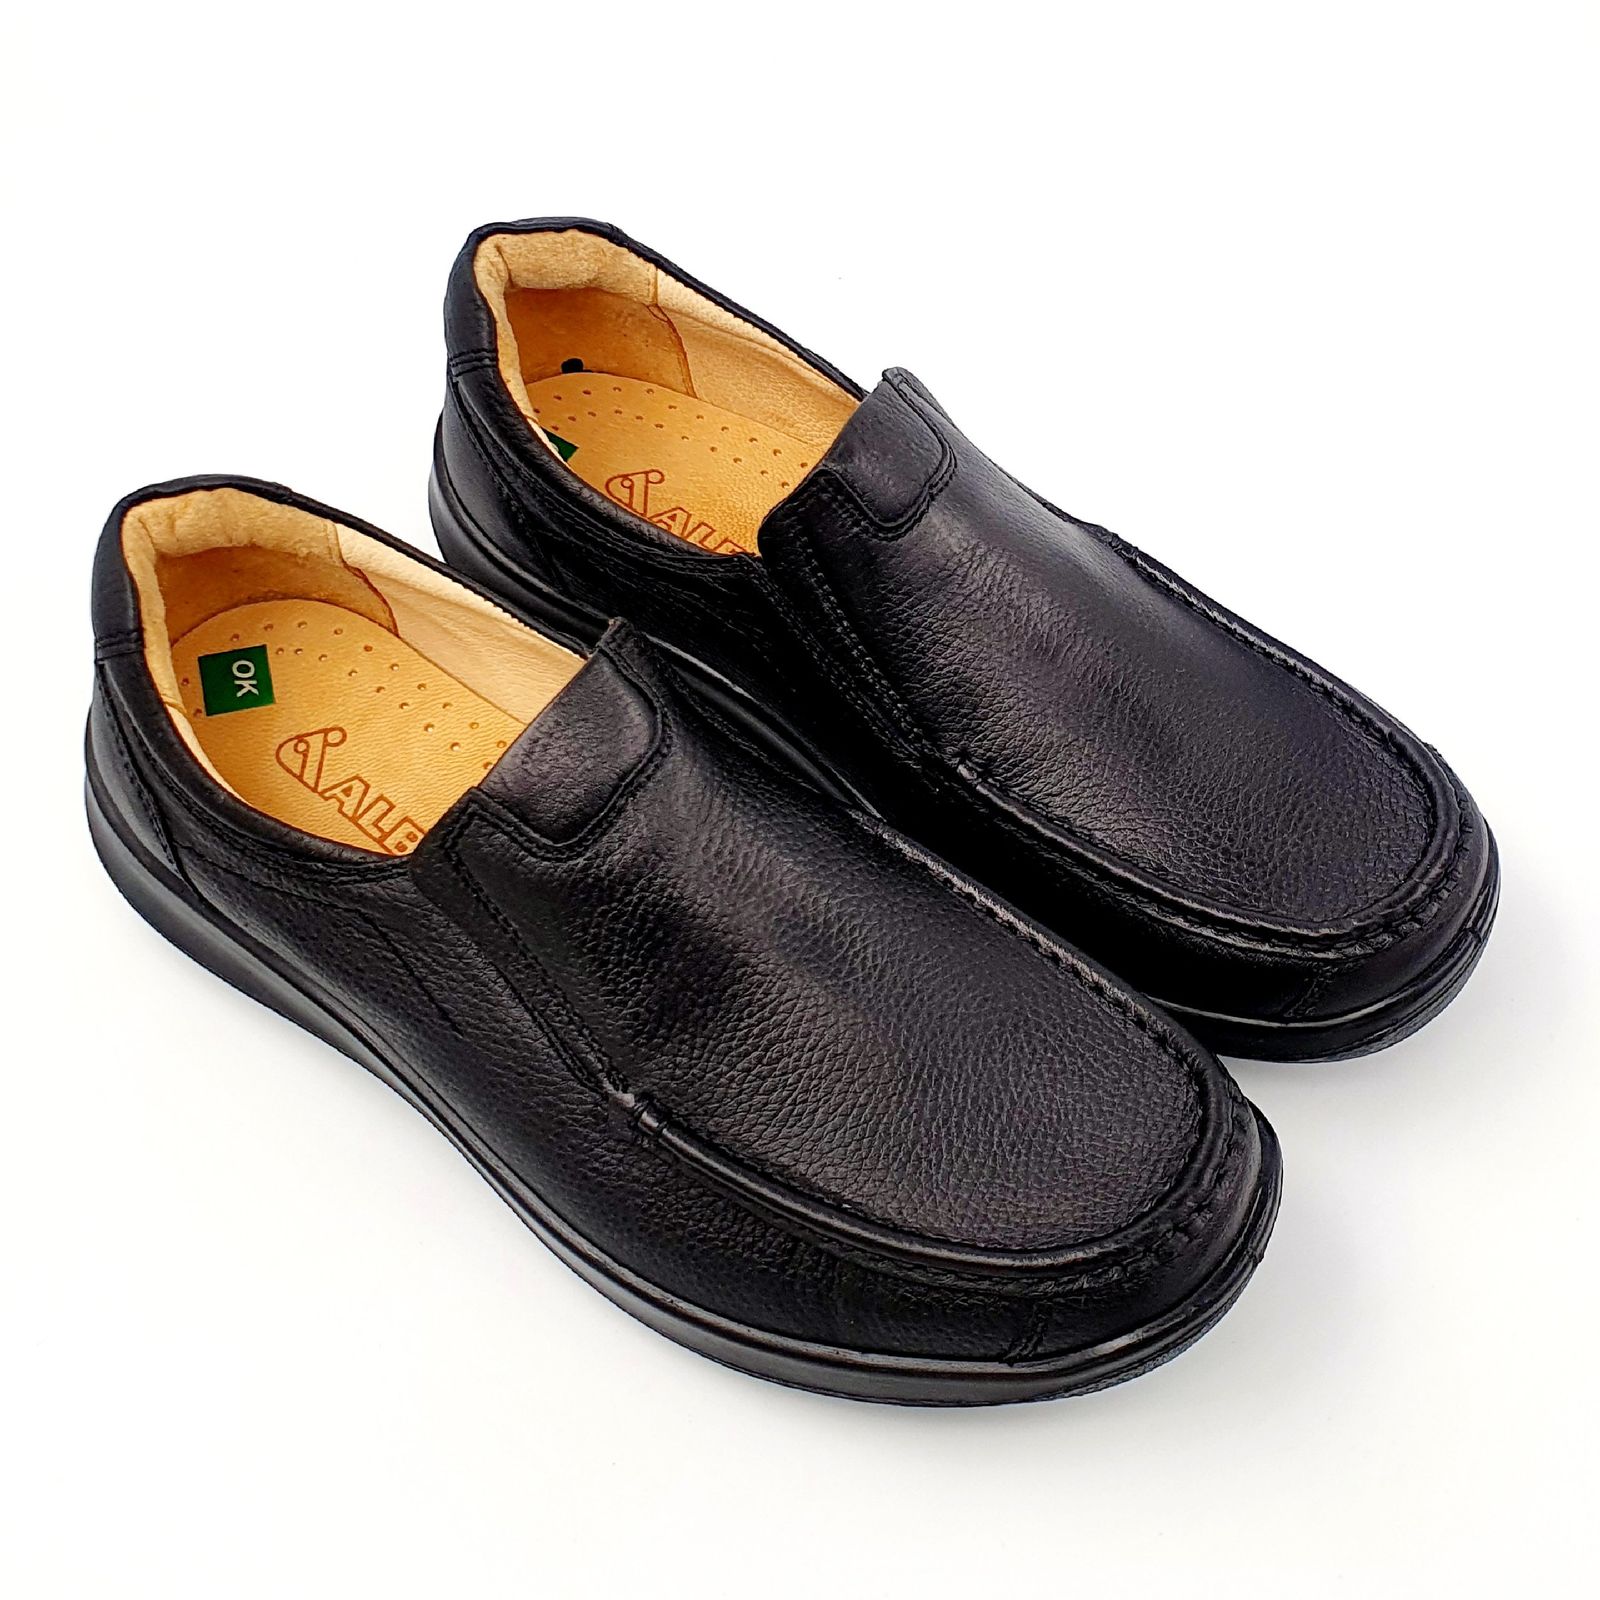 کفش روزمره مردانه شرکت کفش البرز مدل KYO کد 2383-3 -  - 5